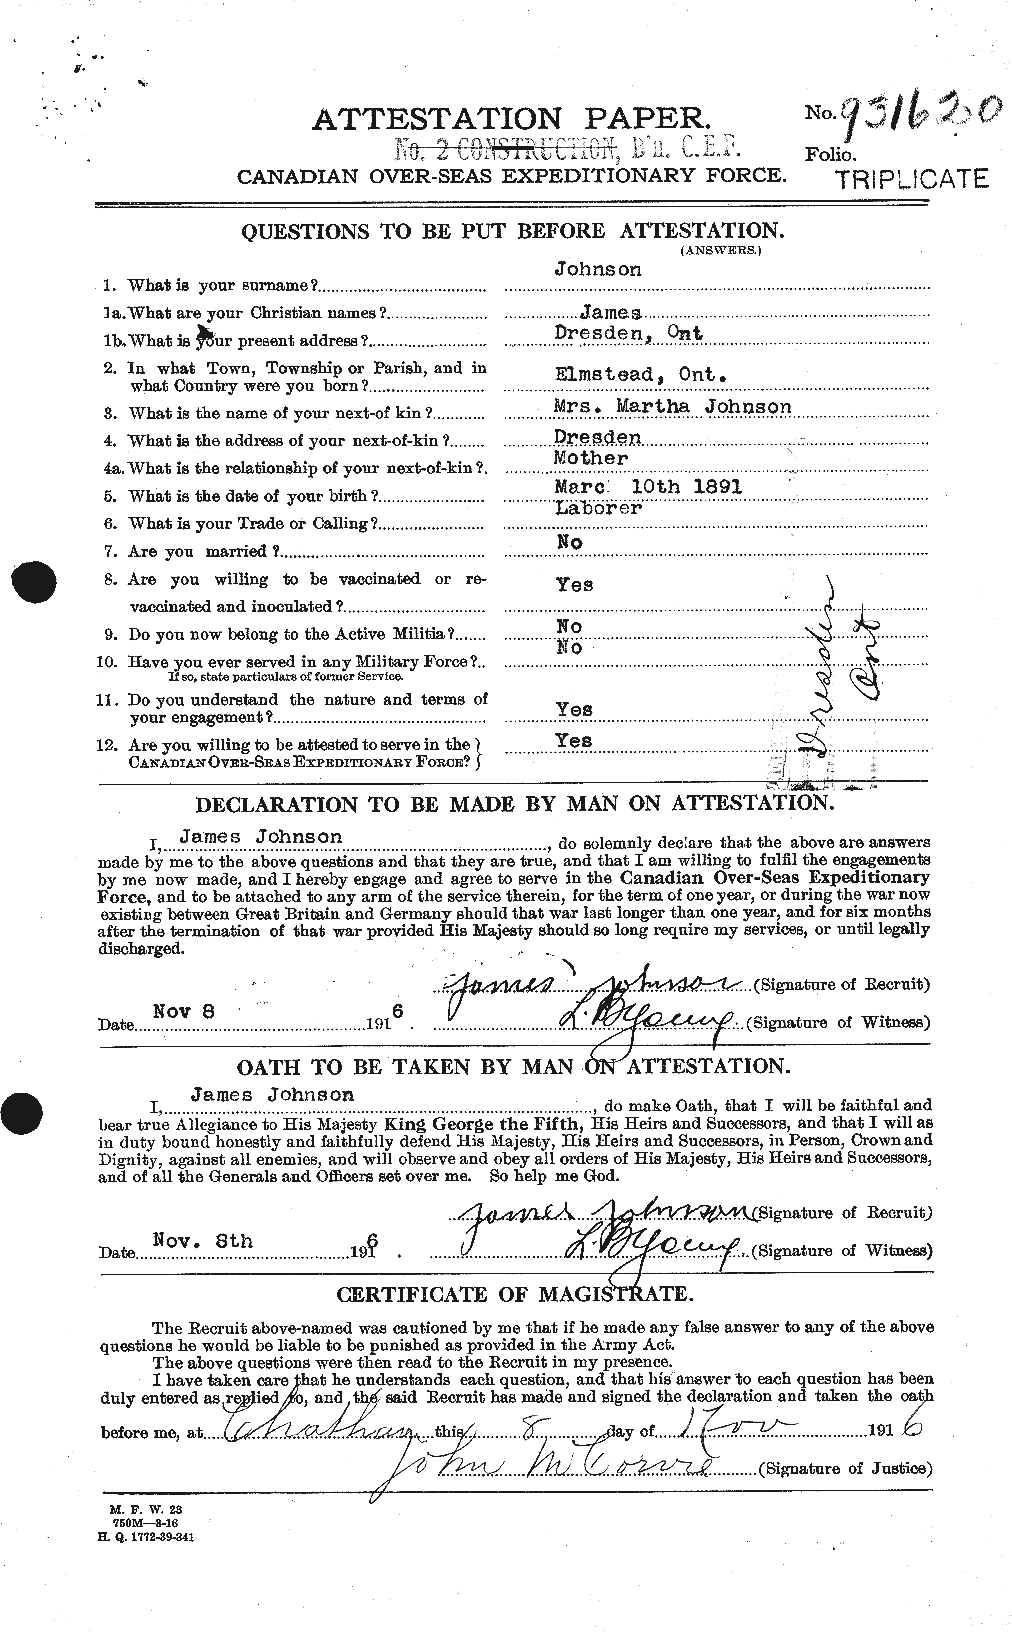 Dossiers du Personnel de la Première Guerre mondiale - CEC 420616a